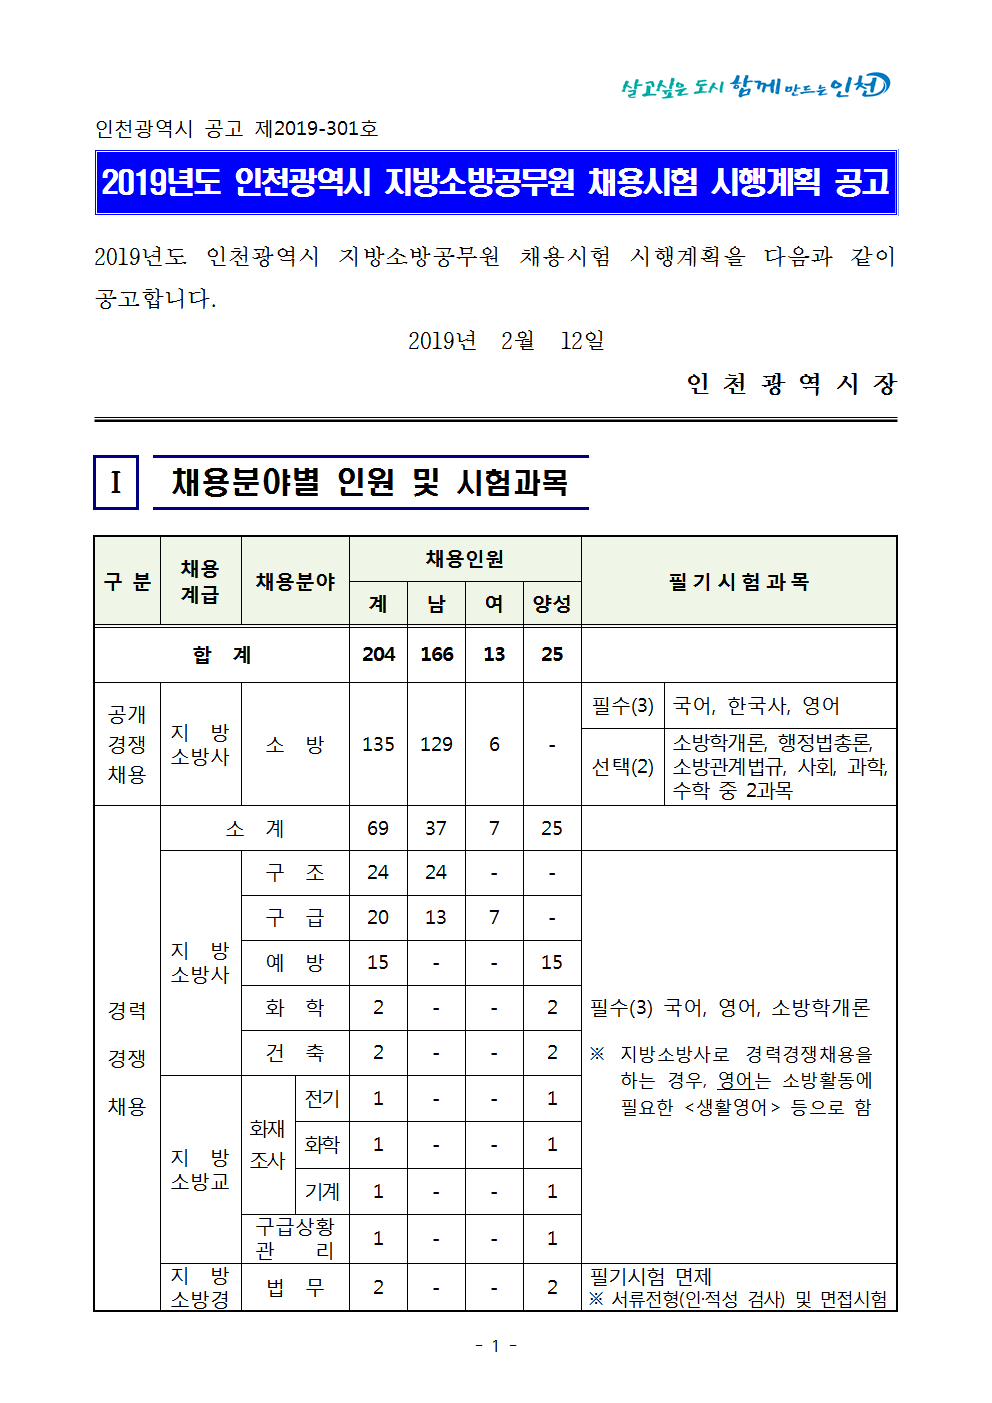 2019년도 인천광역시 지방소방공무원 채용시험 시행계획 공고문001.png